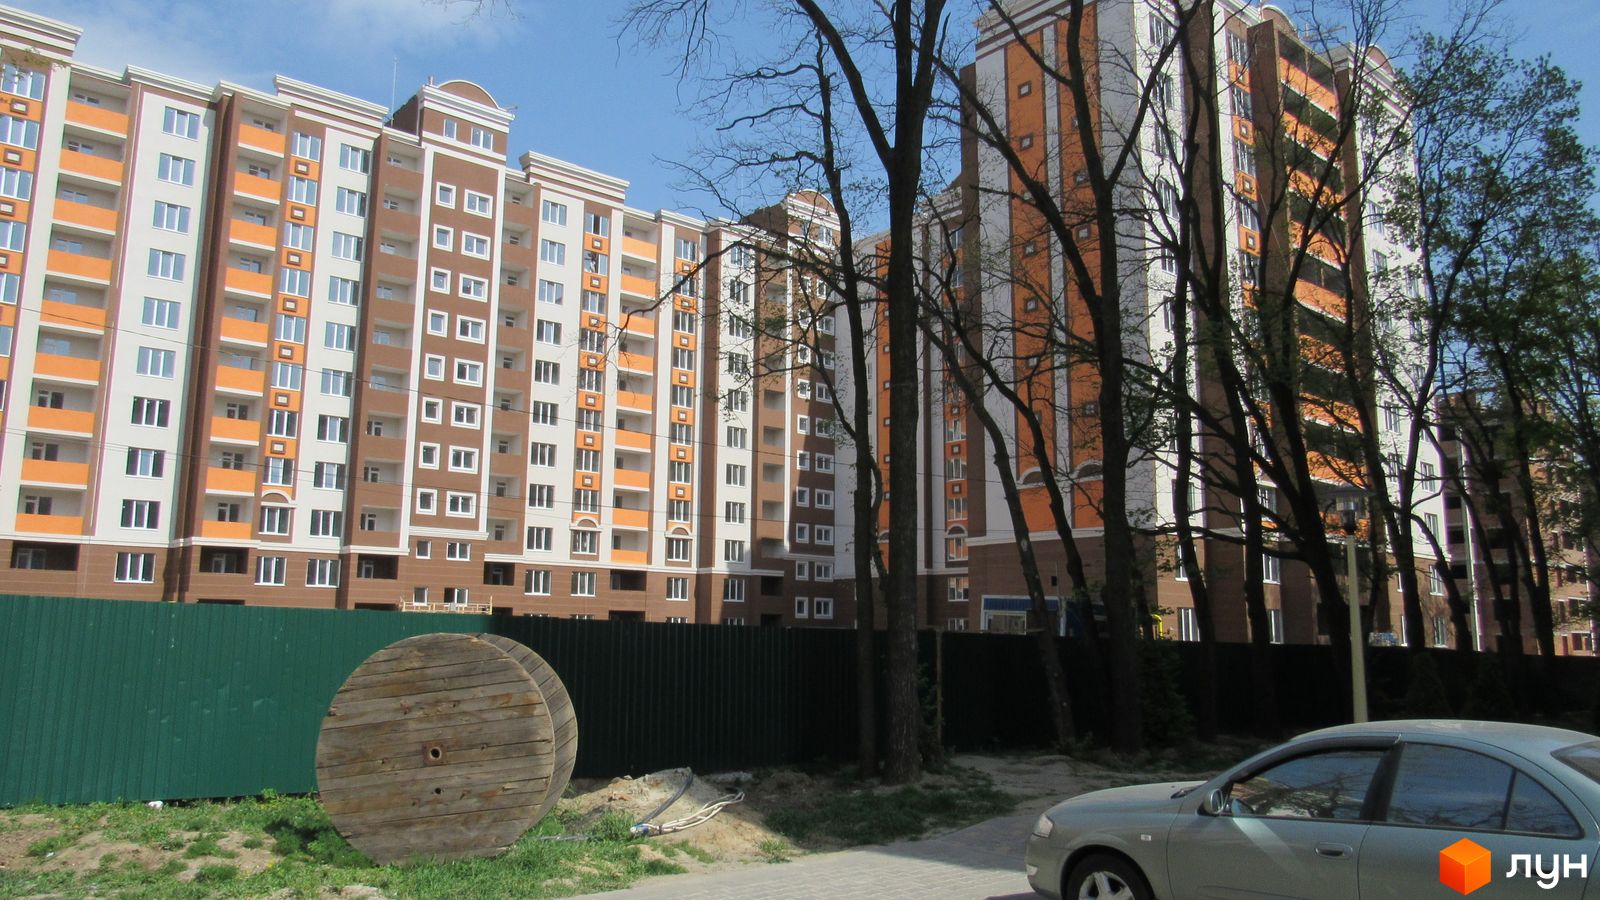 Моніторинг будівництва ЖК Петрівський квартал - Ракурс 7, апрель 2017